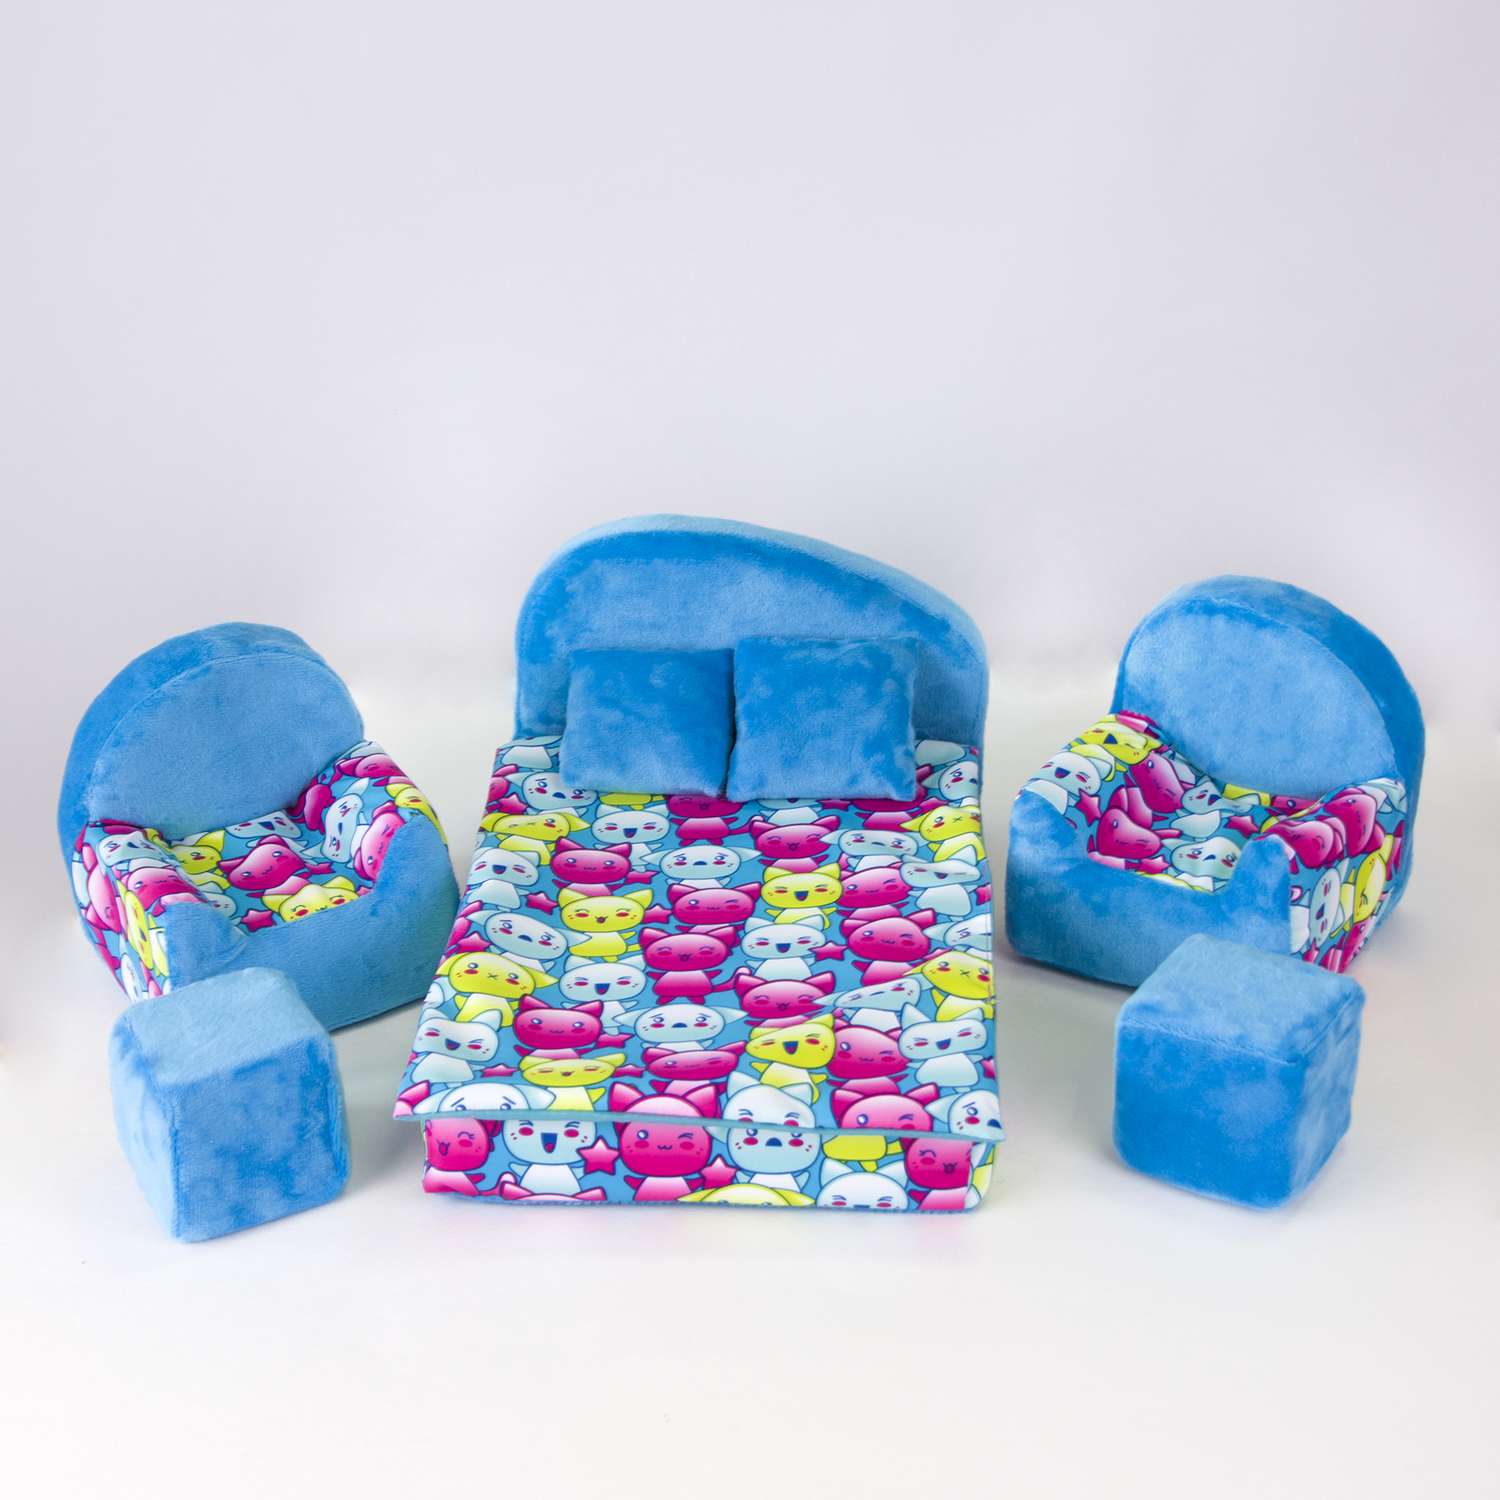 Набор мебели для кукол Belon familia кровать и 2 кресла/ принт хор котят с бирюзовым плюшем НМ-003/2-32 - фото 1